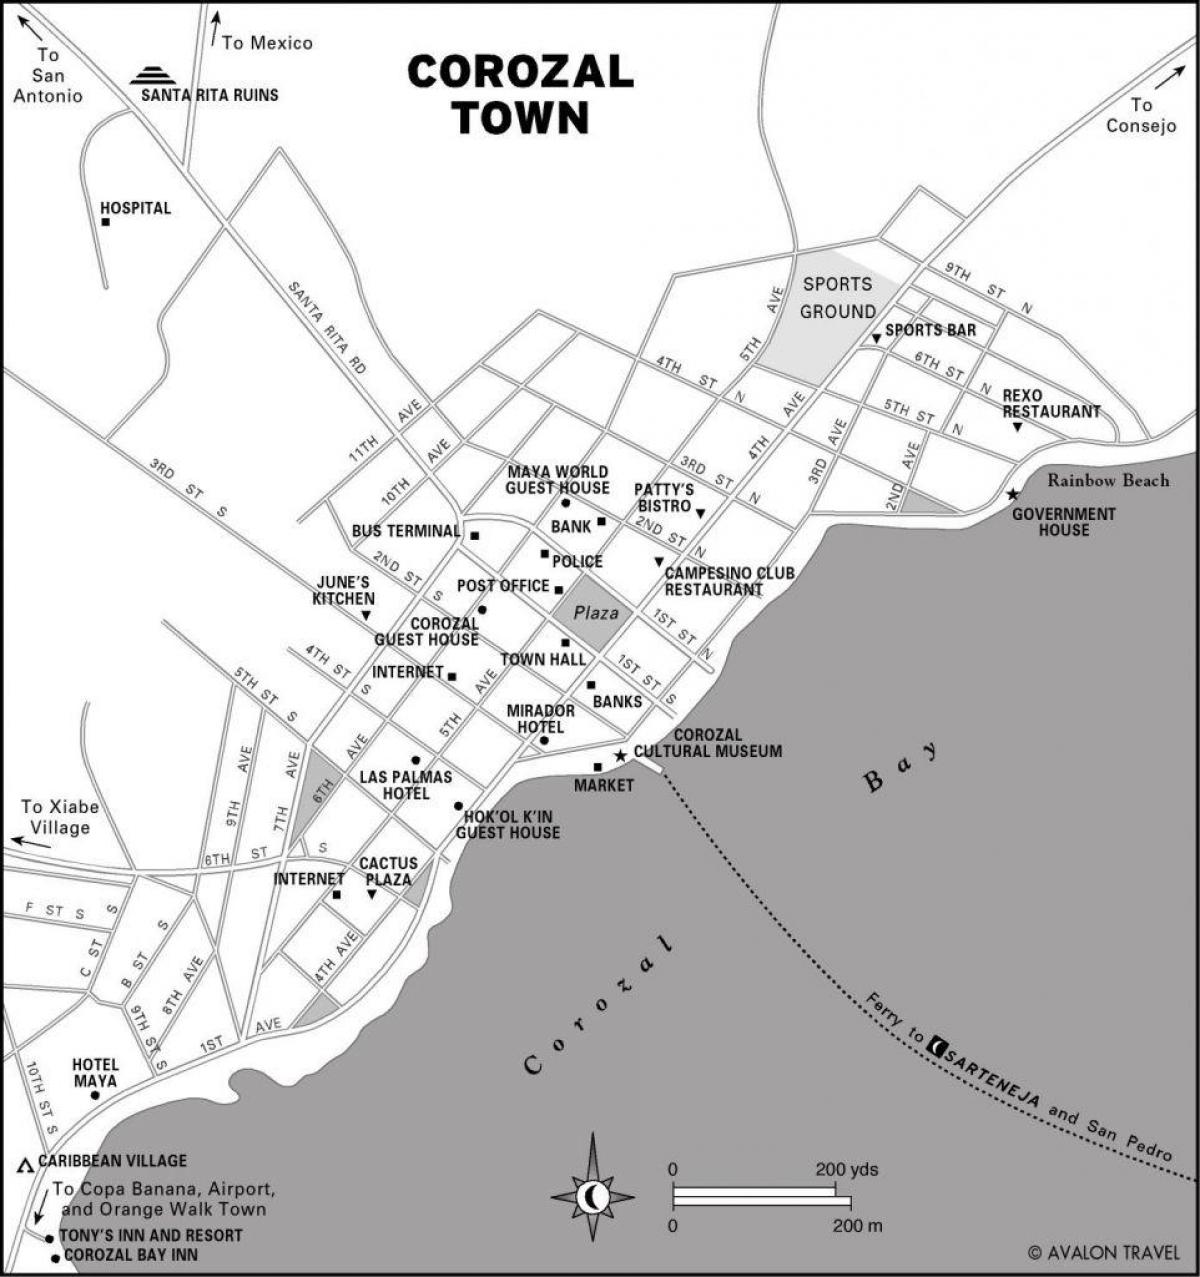 خريطة كوروزال مدينة بليز